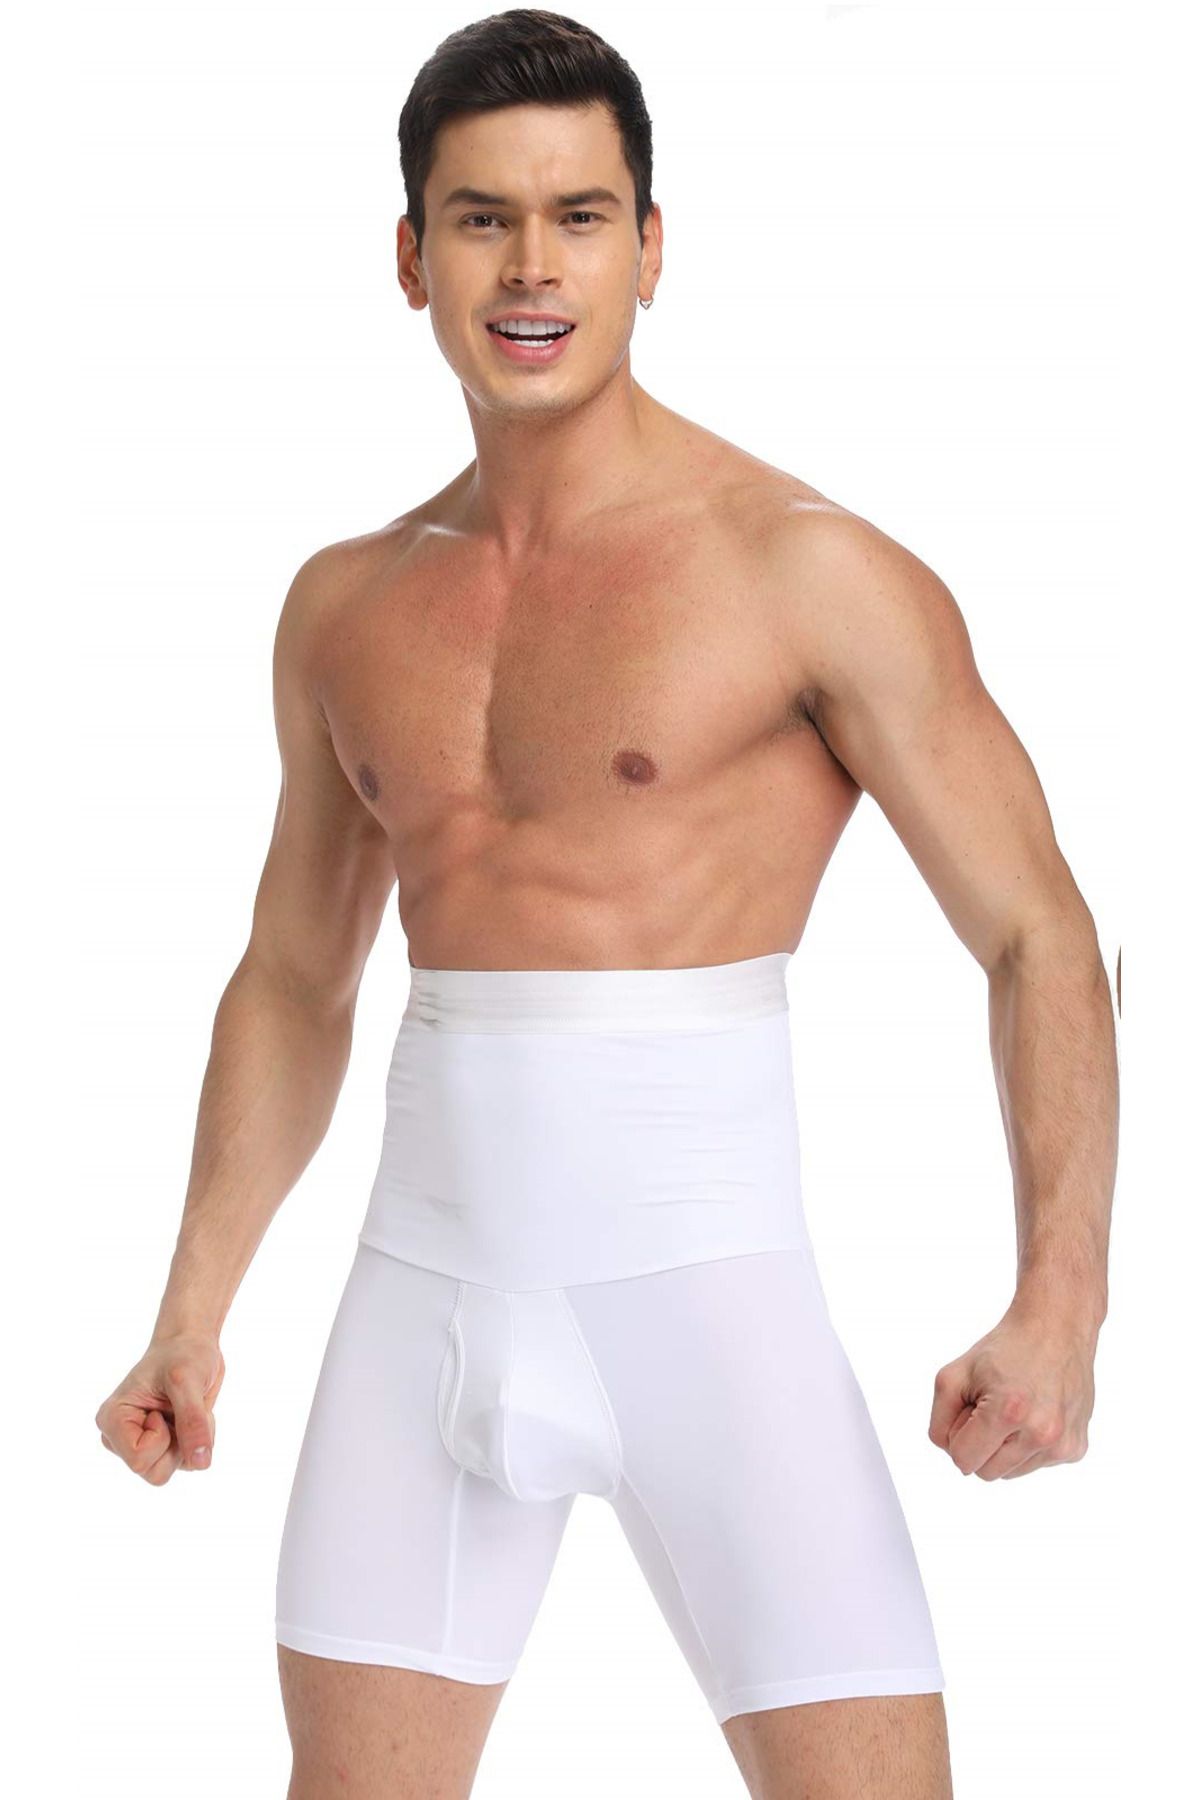 MİSTİRİK Danni Model Korseli Göbek Gizleyen Sıkılaştırıcı Toparlayan Boxer Beyaz Renk